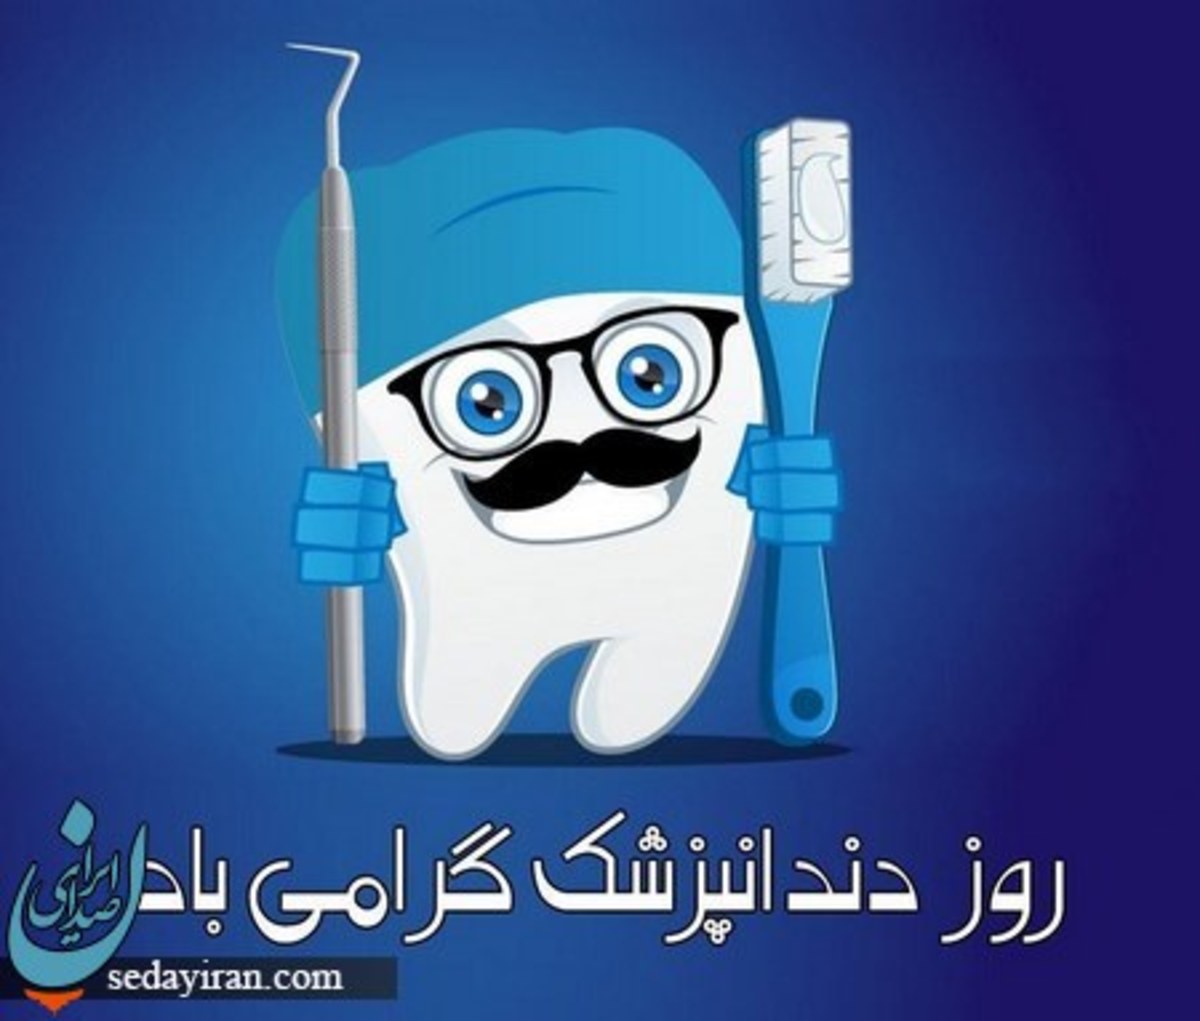 روز دندان پزشک 1401 چه روزی است؟